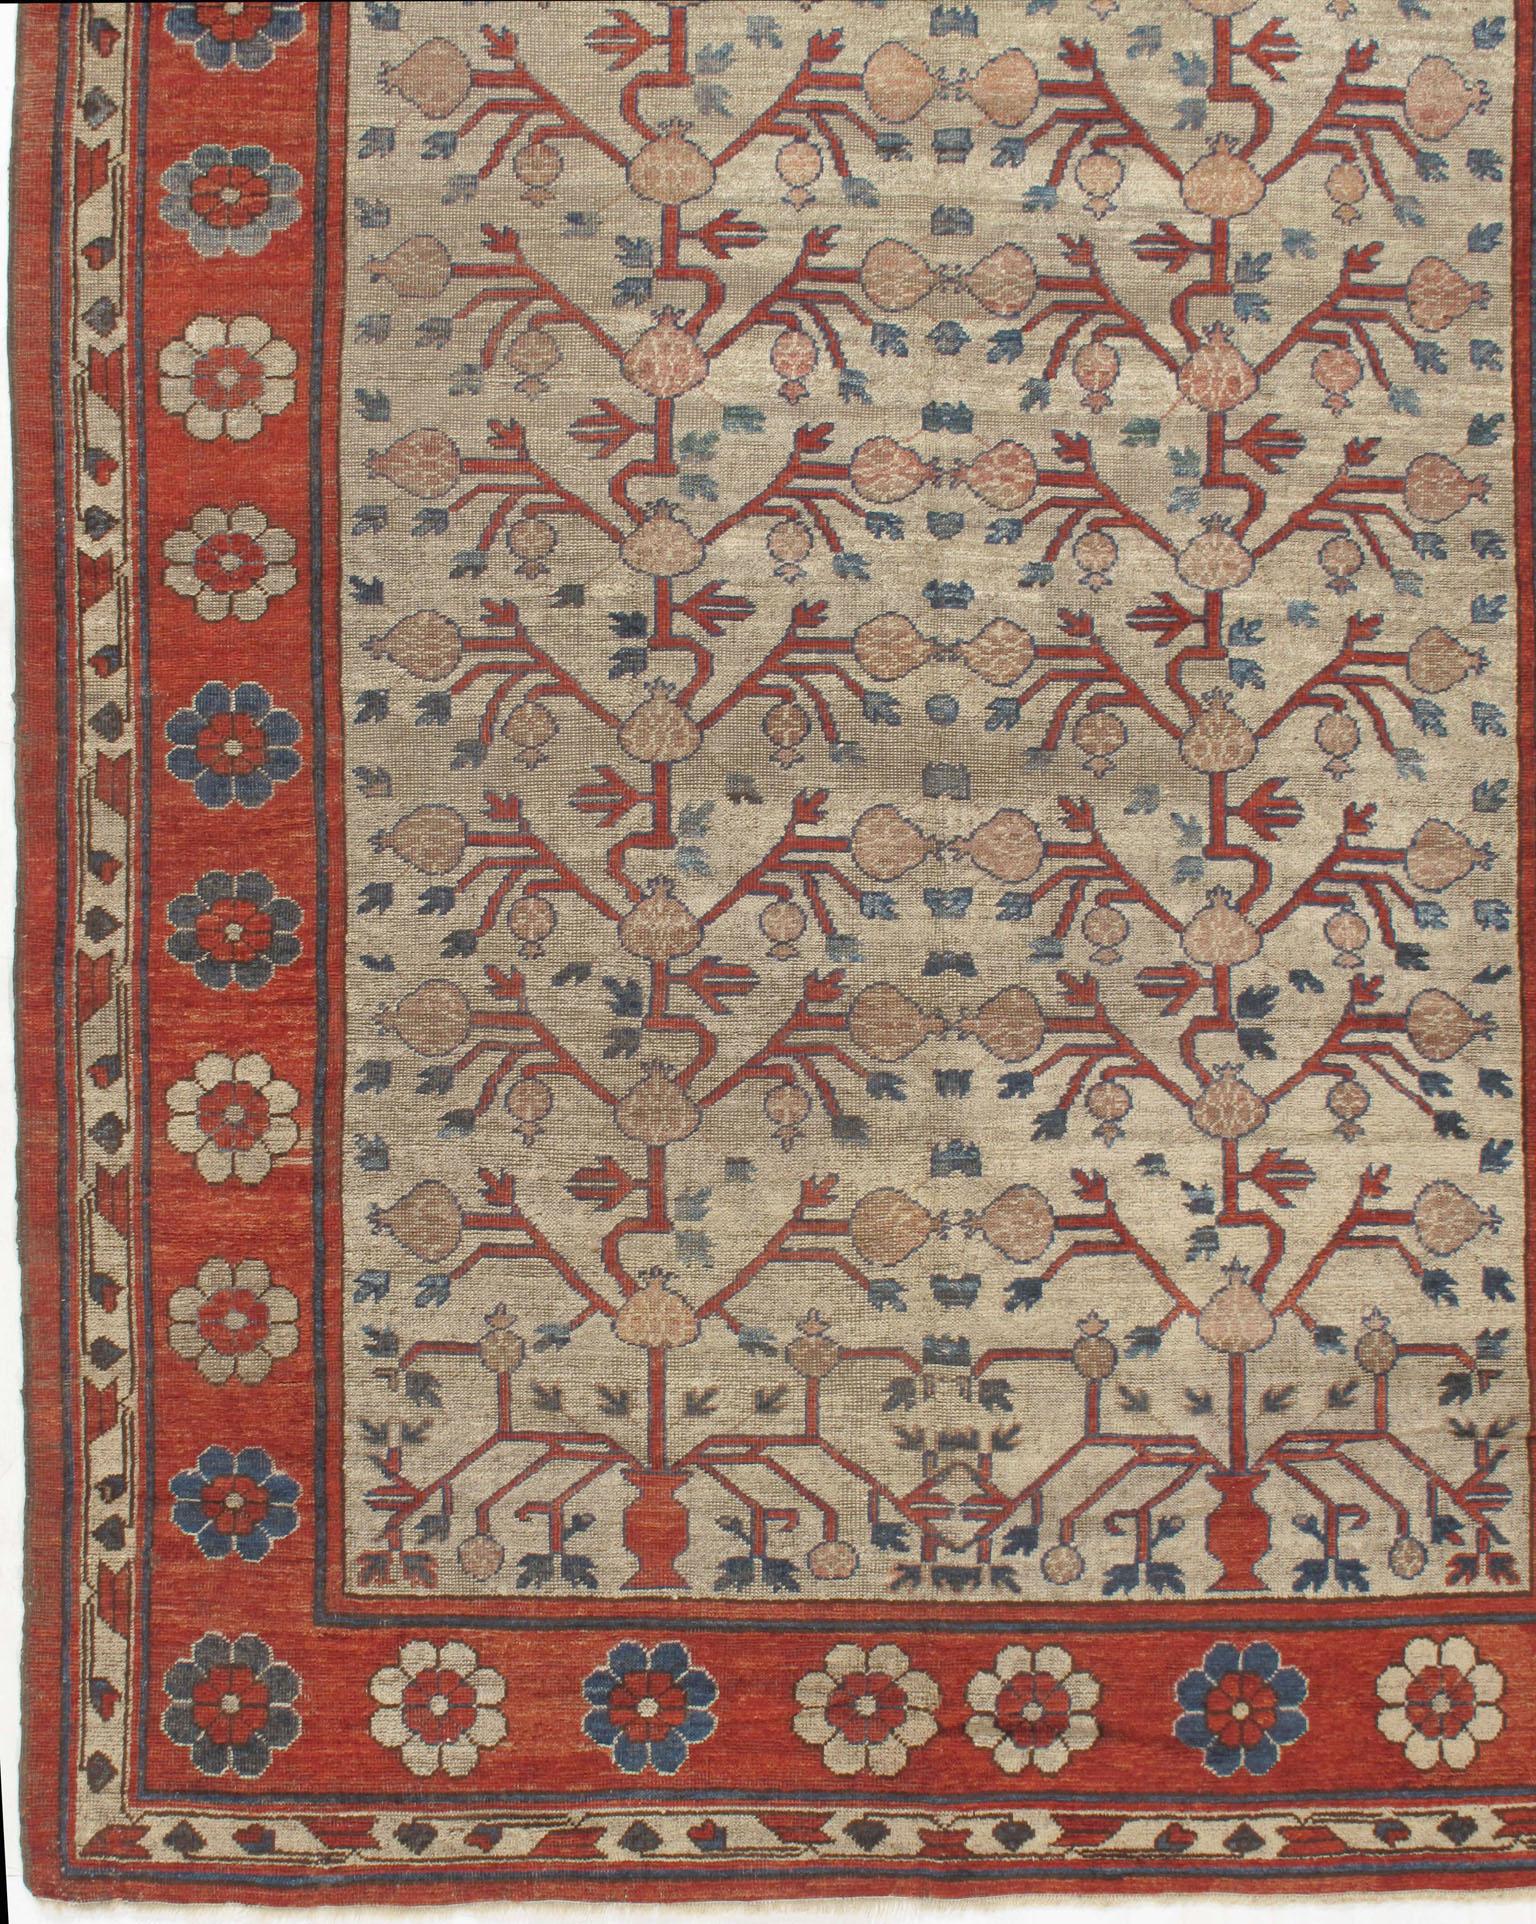 Antiker Khotan-Samarkand-Teppich, 6'3 x 12'3. Dieses wunderbare Stück hat ein schönes elfenbeinfarbenes Feld mit einem floralen Muster gefüllt. Der Teppich hat einen niedrigen, durchgehenden Flor, der die Patina noch verstärkt und dem Teppich diesen